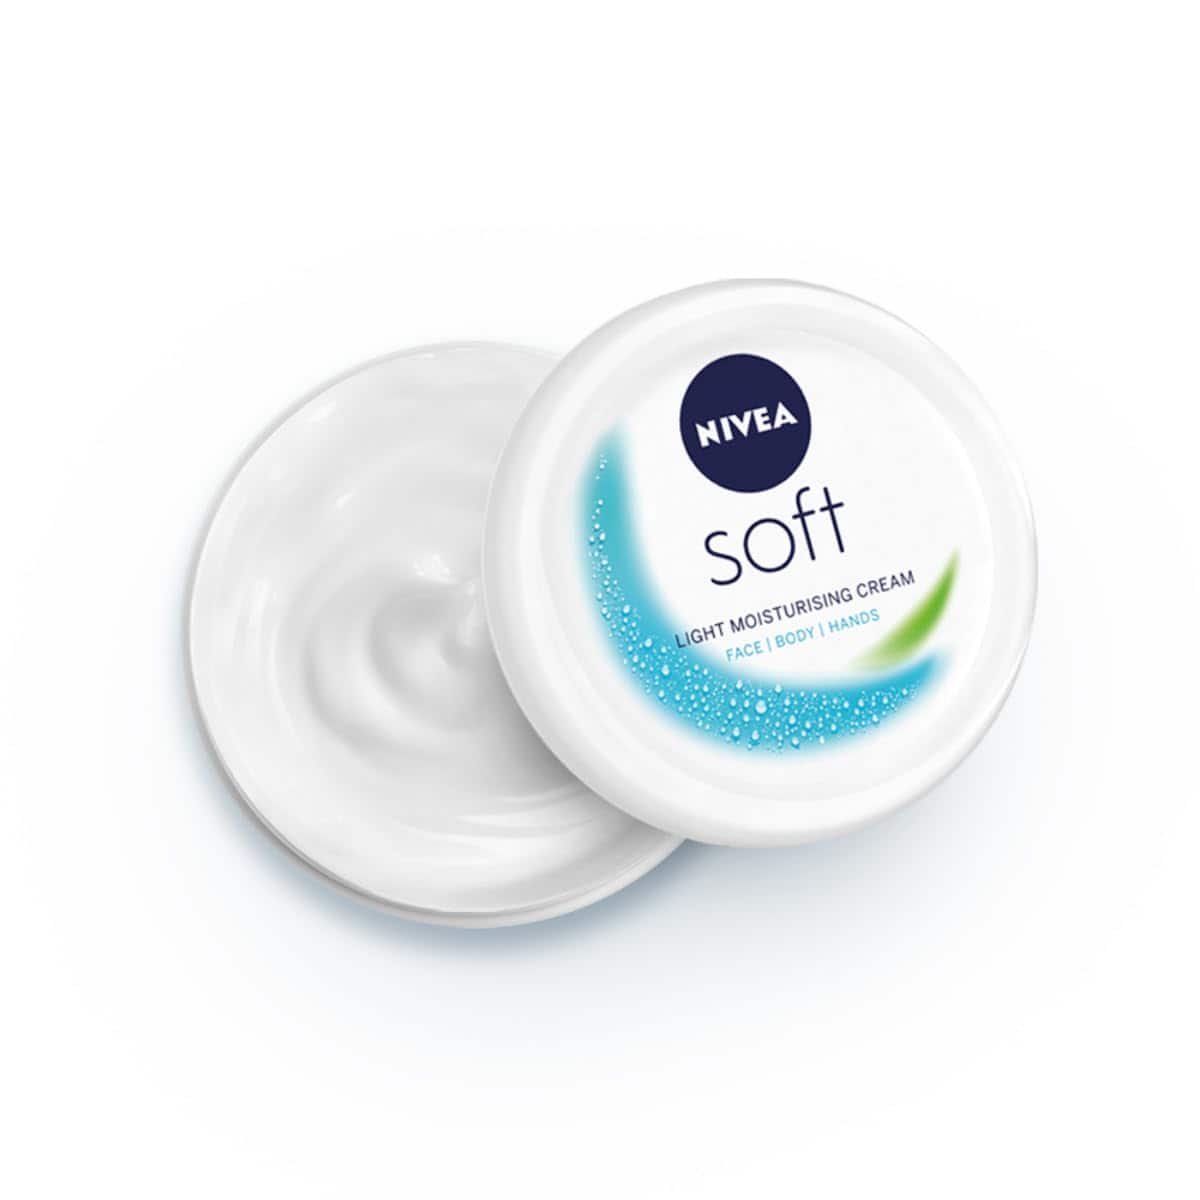 NIVEA Soft Light Moisturizer, Non-Greasy Cream